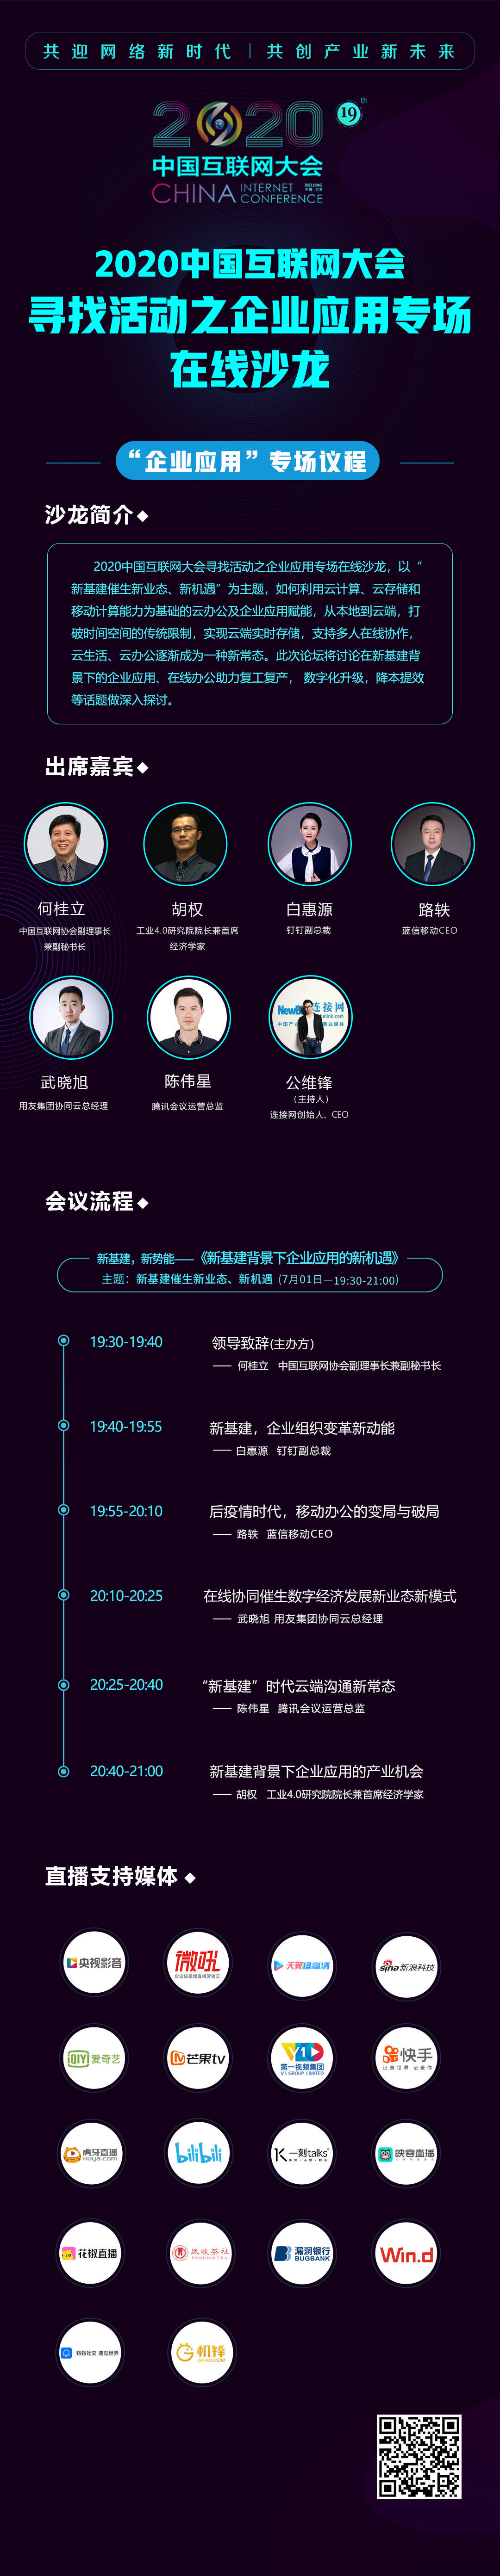 2020中国互联网大会企业应用专场沙龙